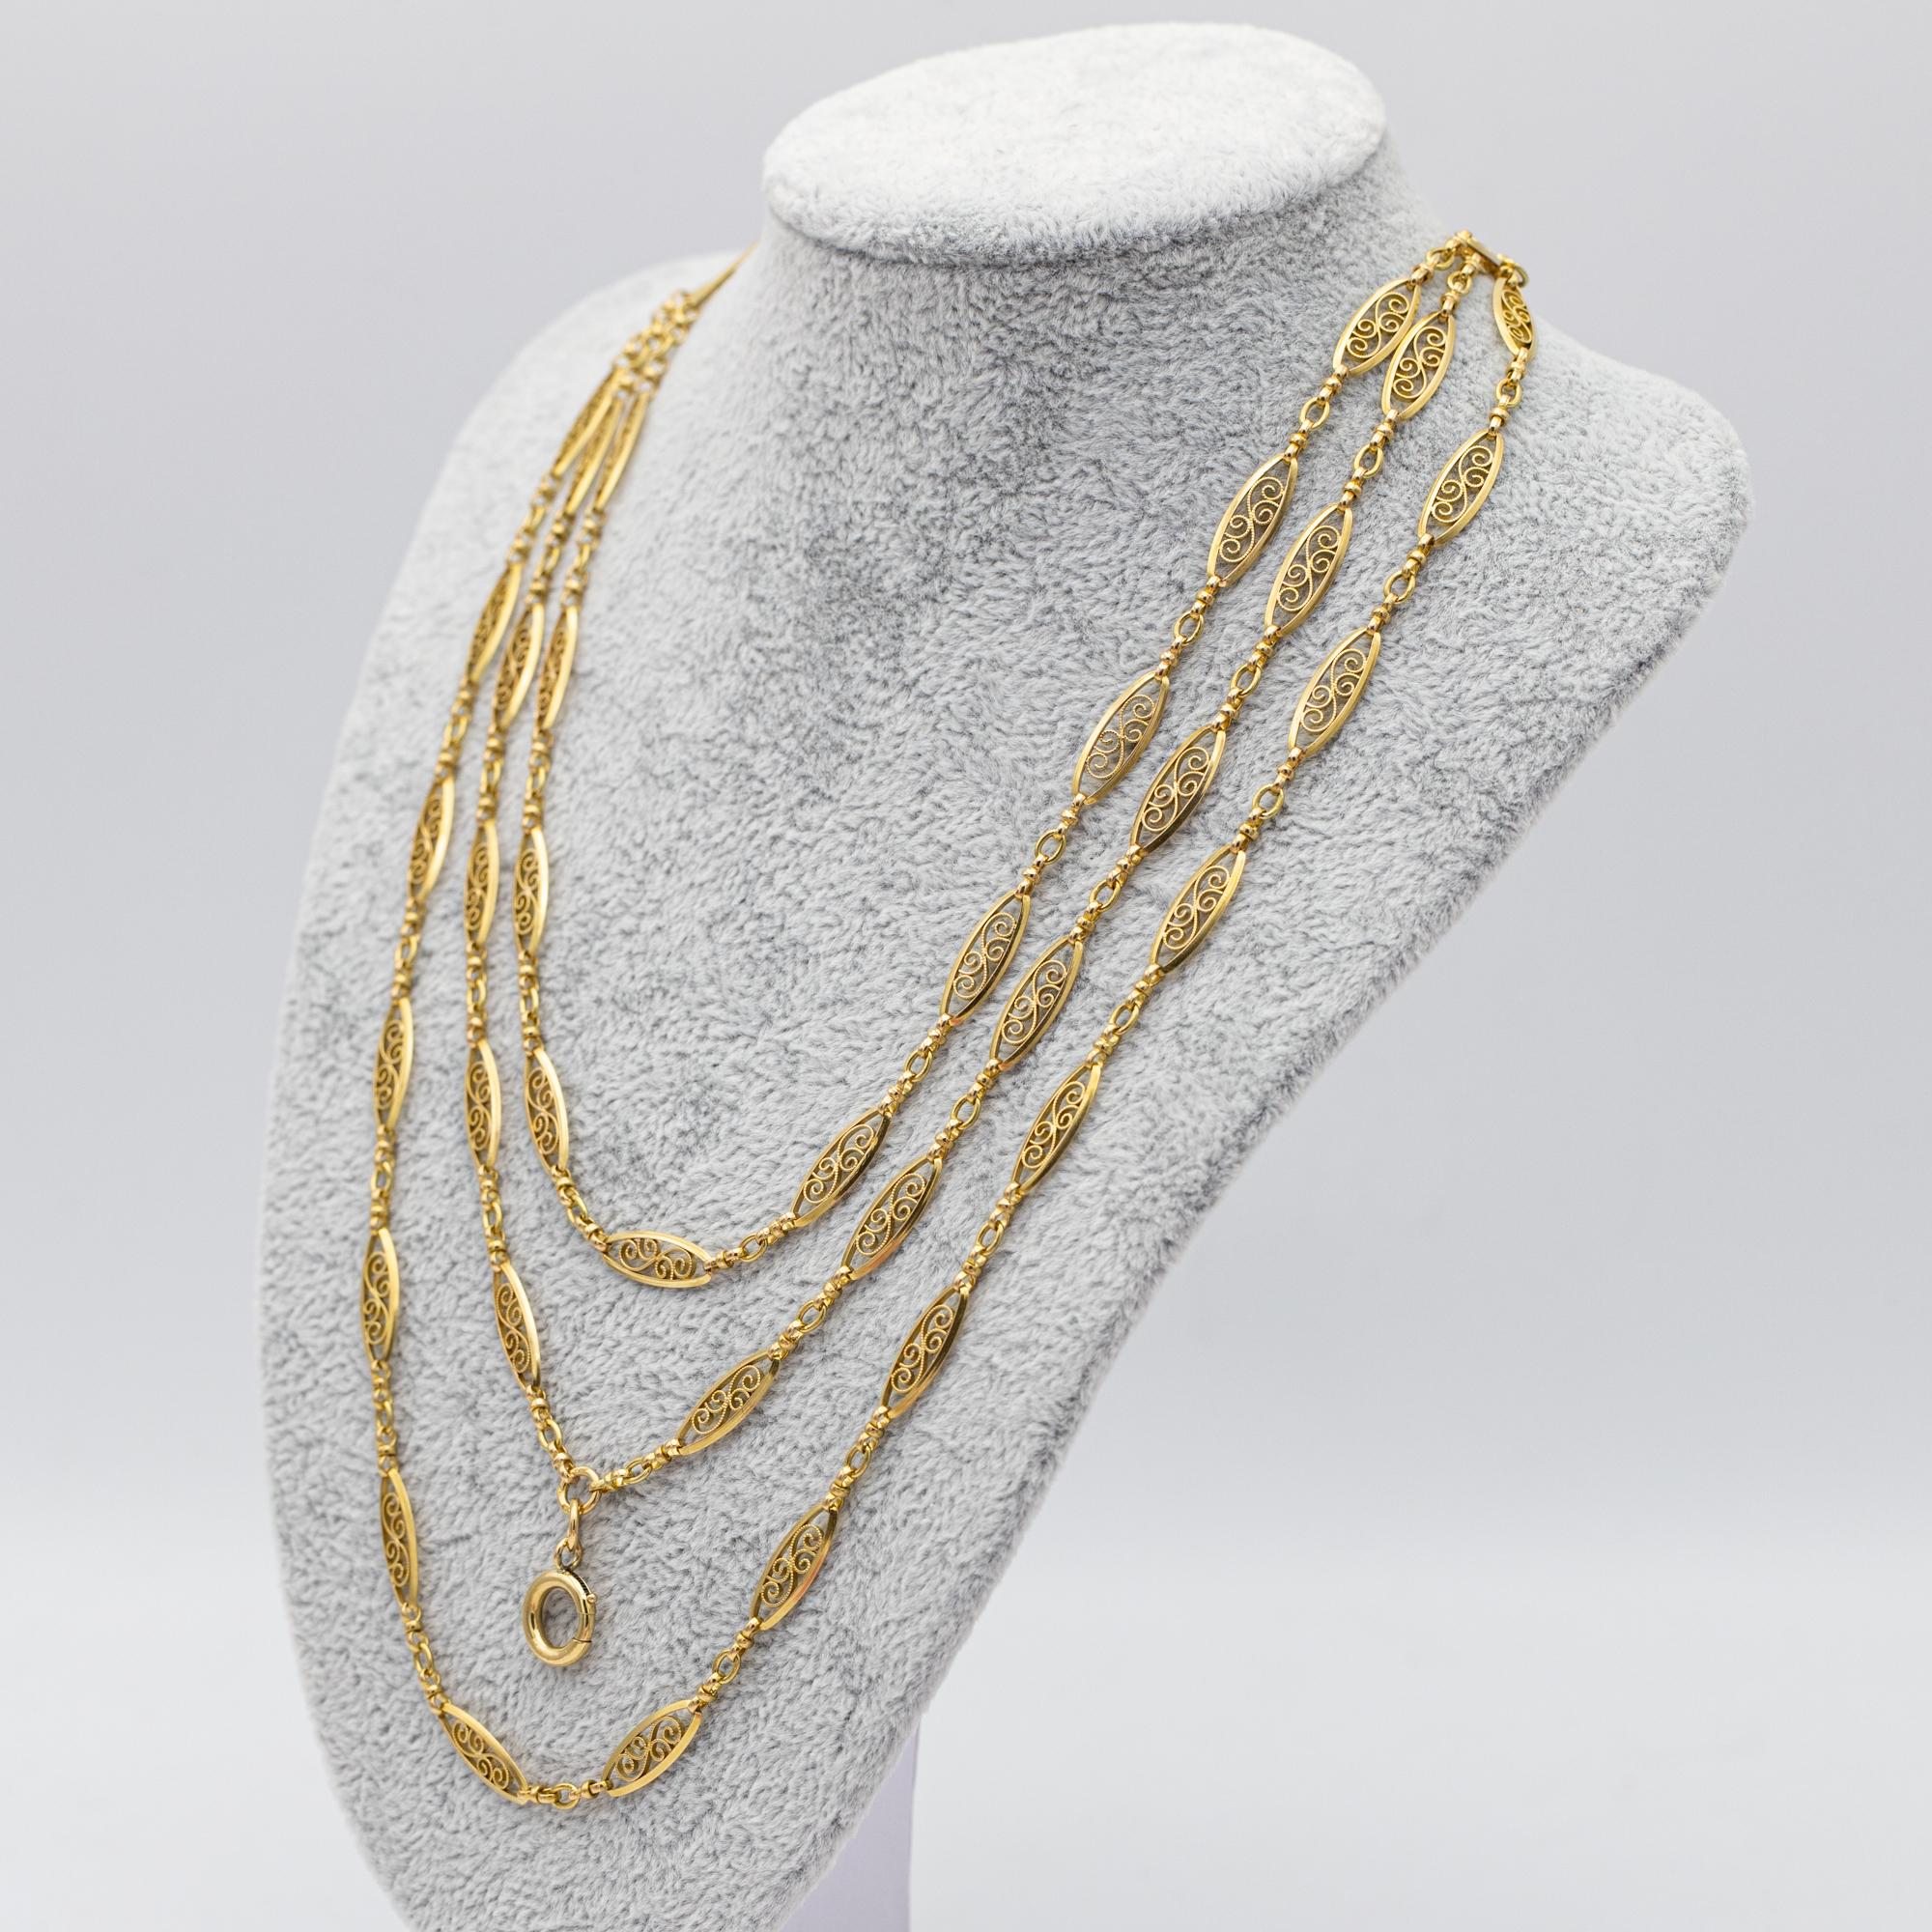 Antique 18k gold Sautoir necklace, 155cm long guard, Victorian double rope chain 6